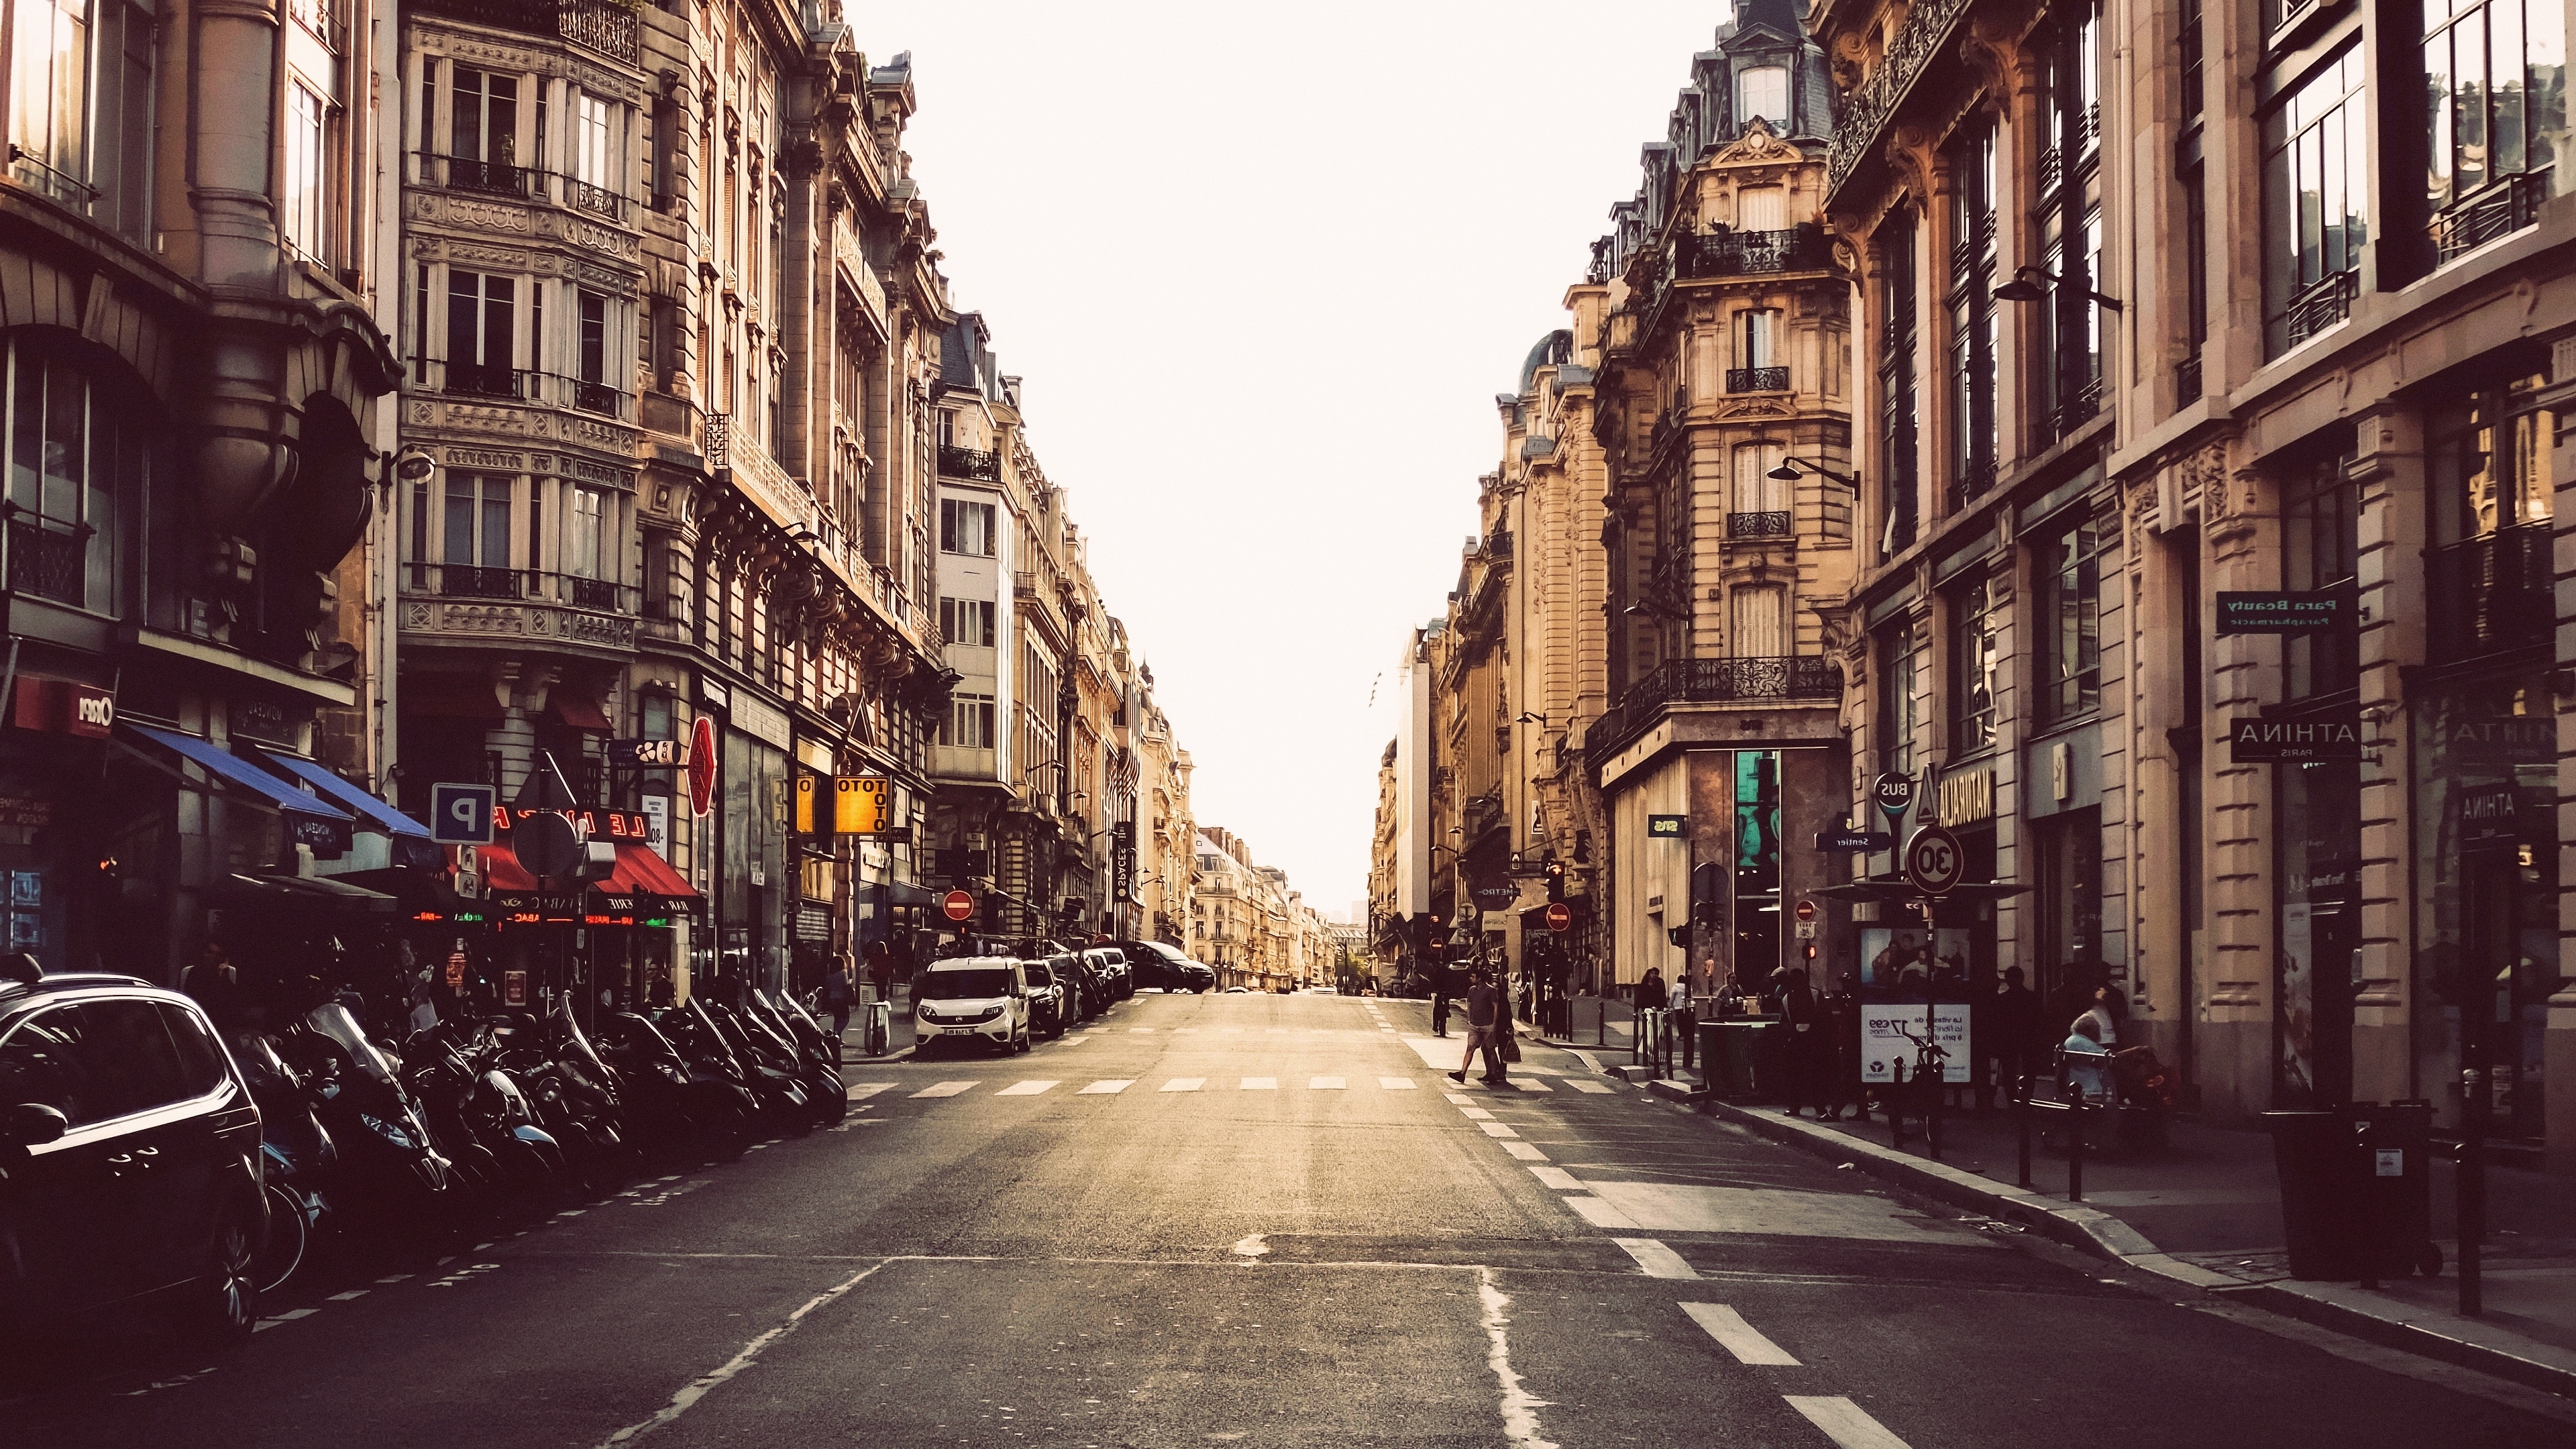 Улица качество 720. Улица Урбан. Улица города. Парижские улицы. Улица пустая Париж.